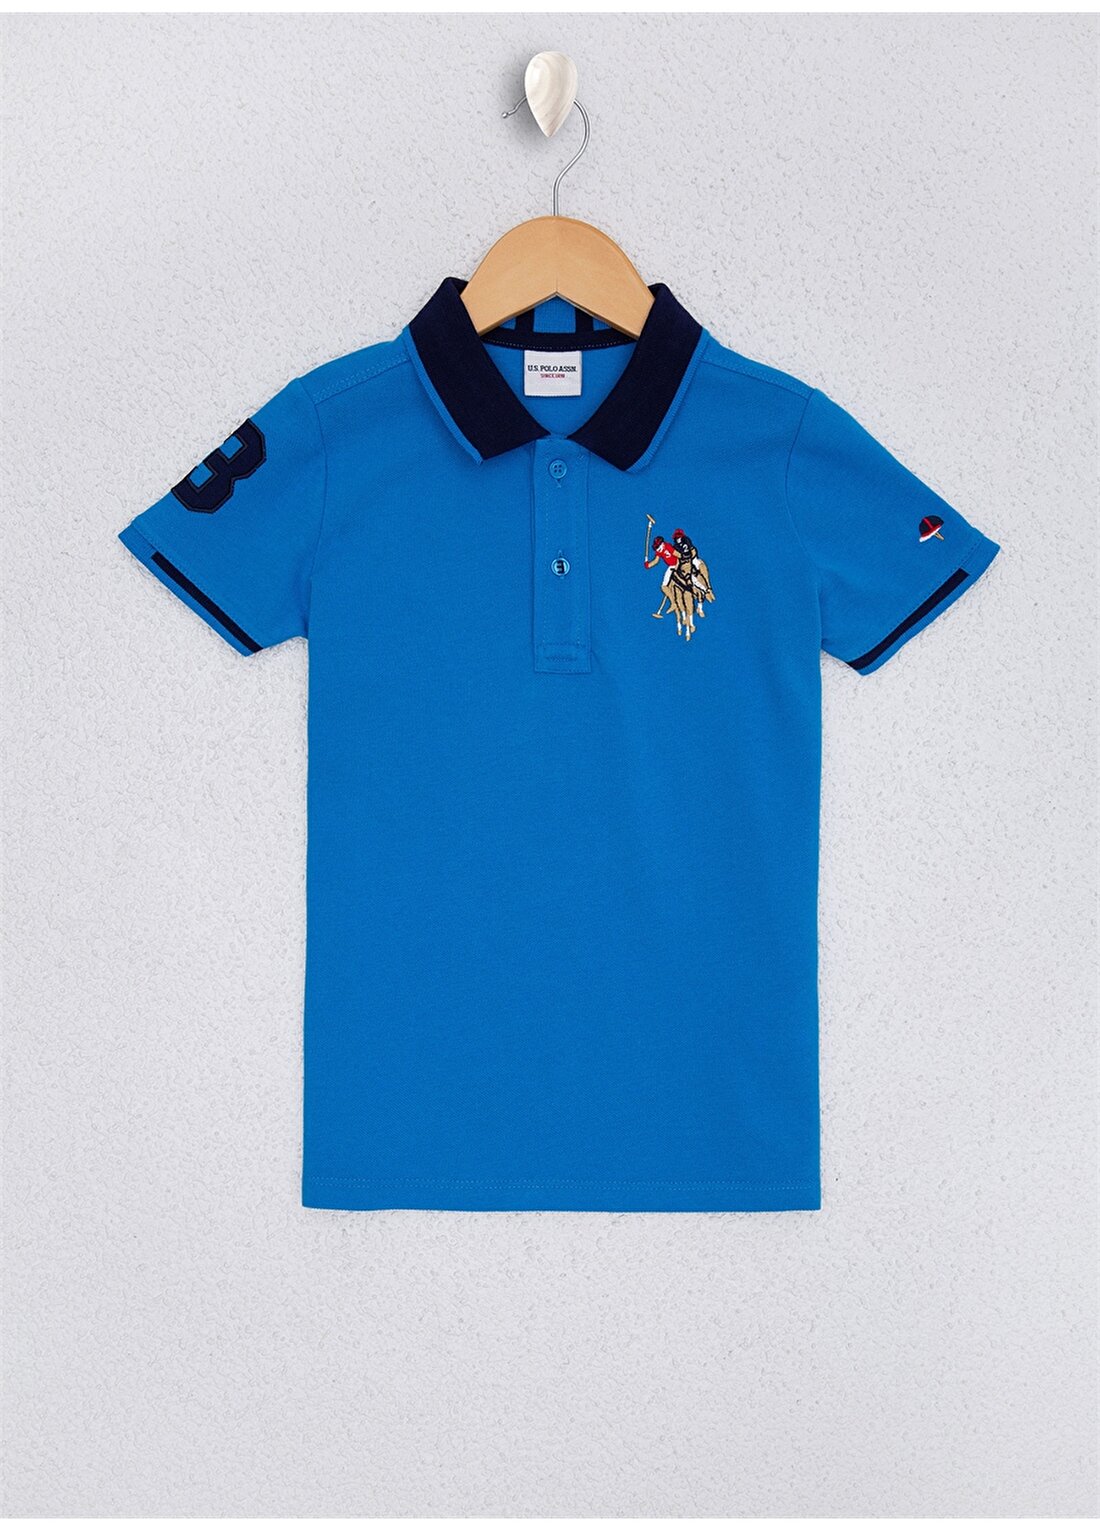 U.S. Polo Assn. Kobalt Erkek Çocuk T-Shirt